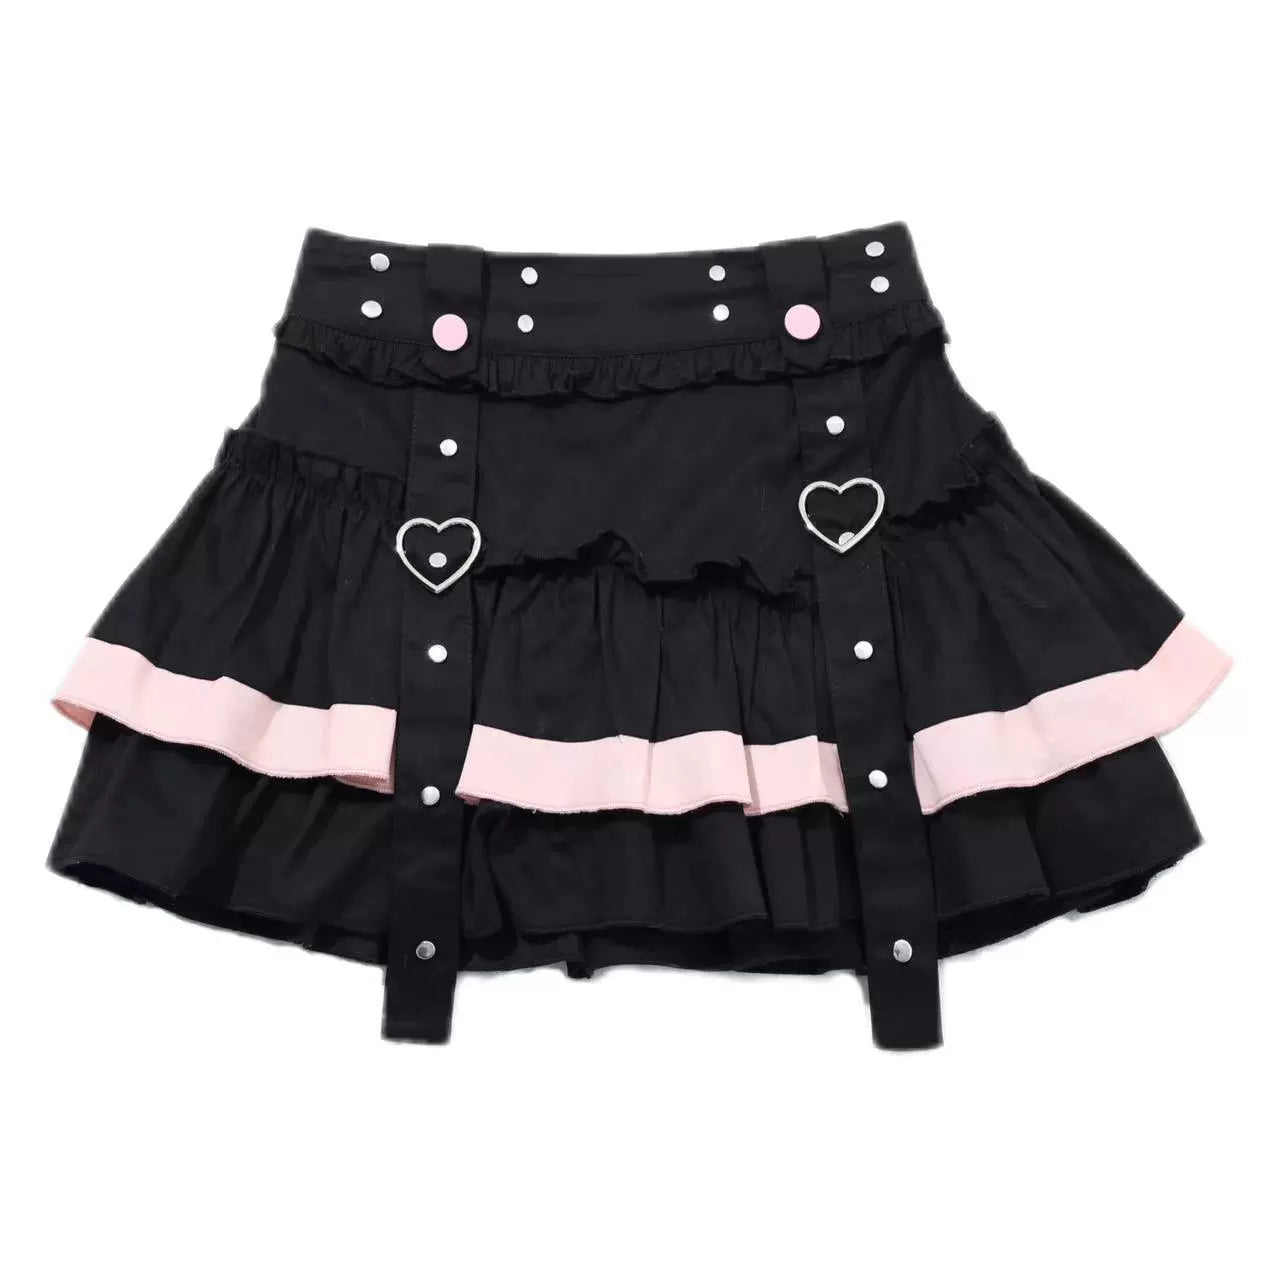 Spicy Girls Skirt Black Double-hem Skirt Heart Buckle Skirt (L M S / Black) 35792:577868